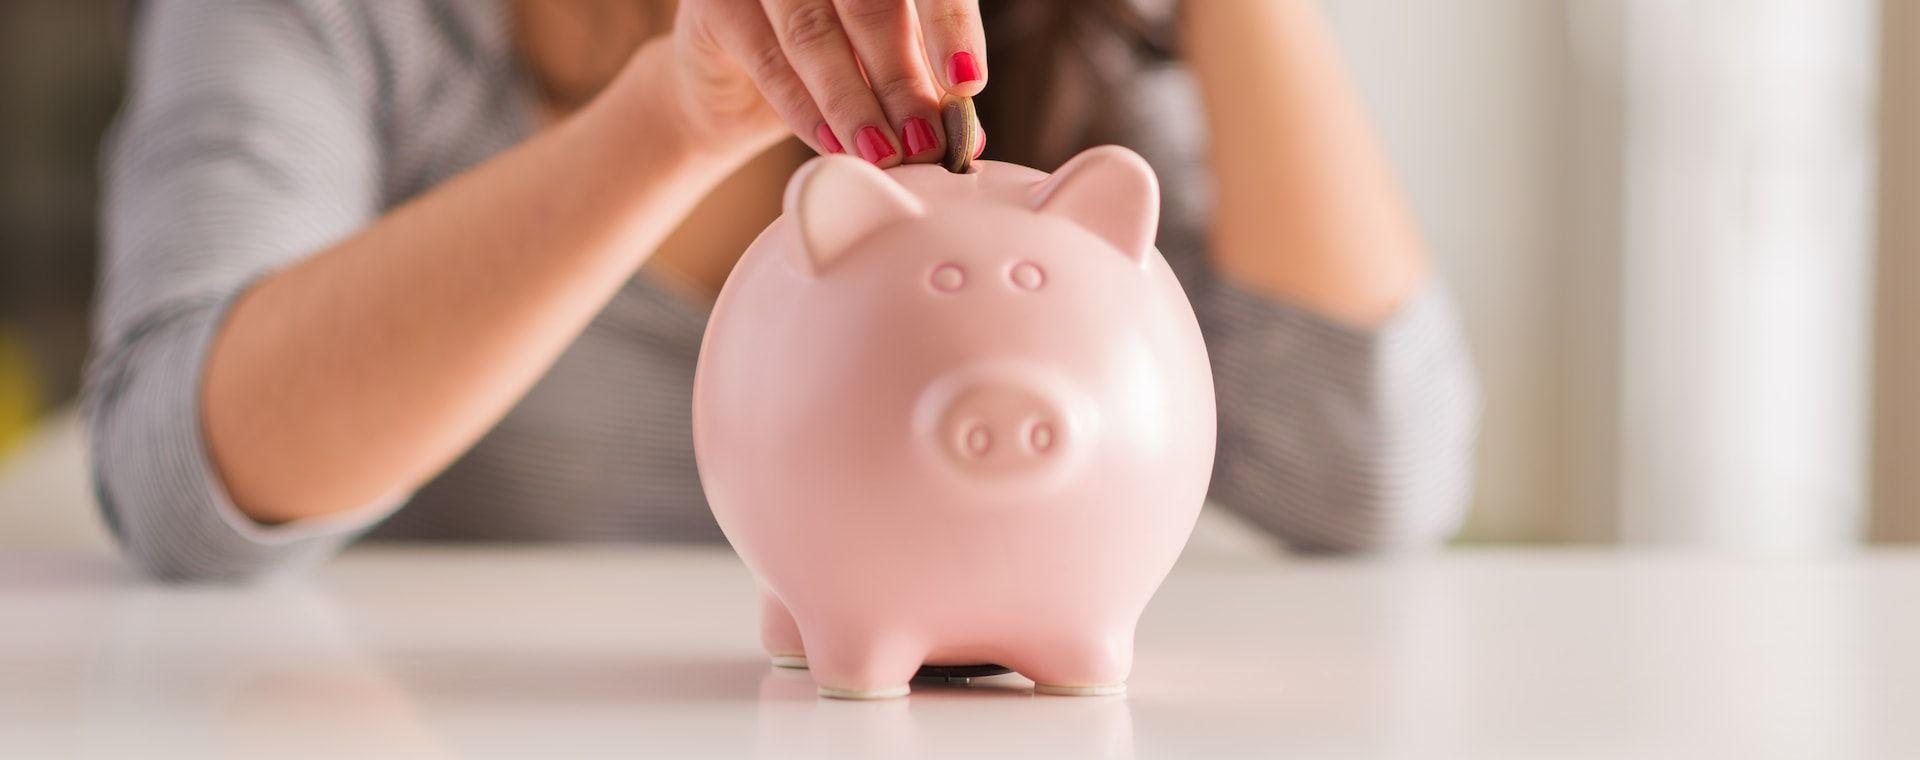 Motivos para ahorrar dinero que debes priorizar en tu vida